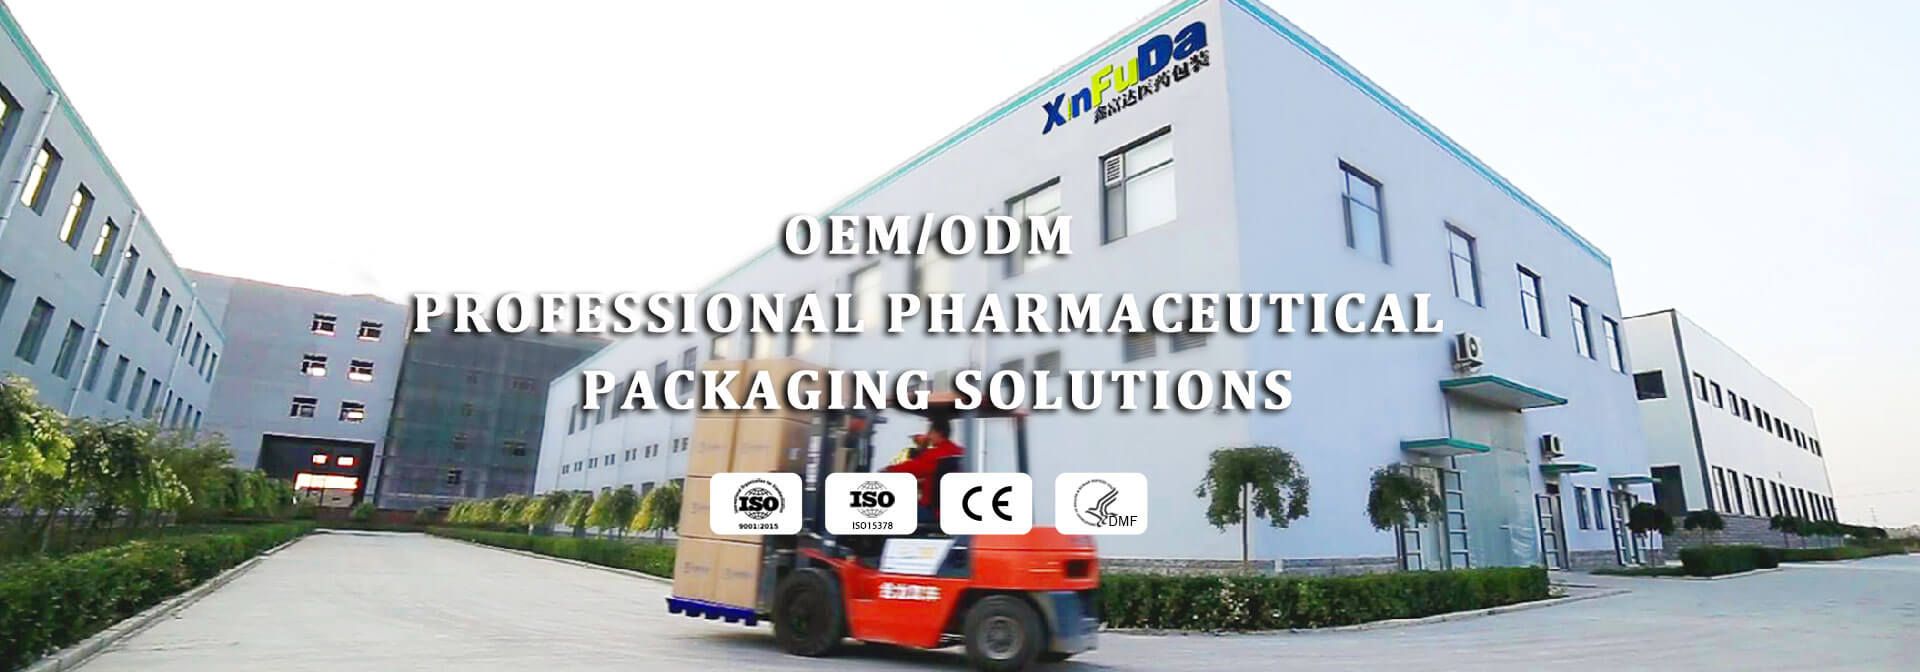 pharmaceutical packaging oem